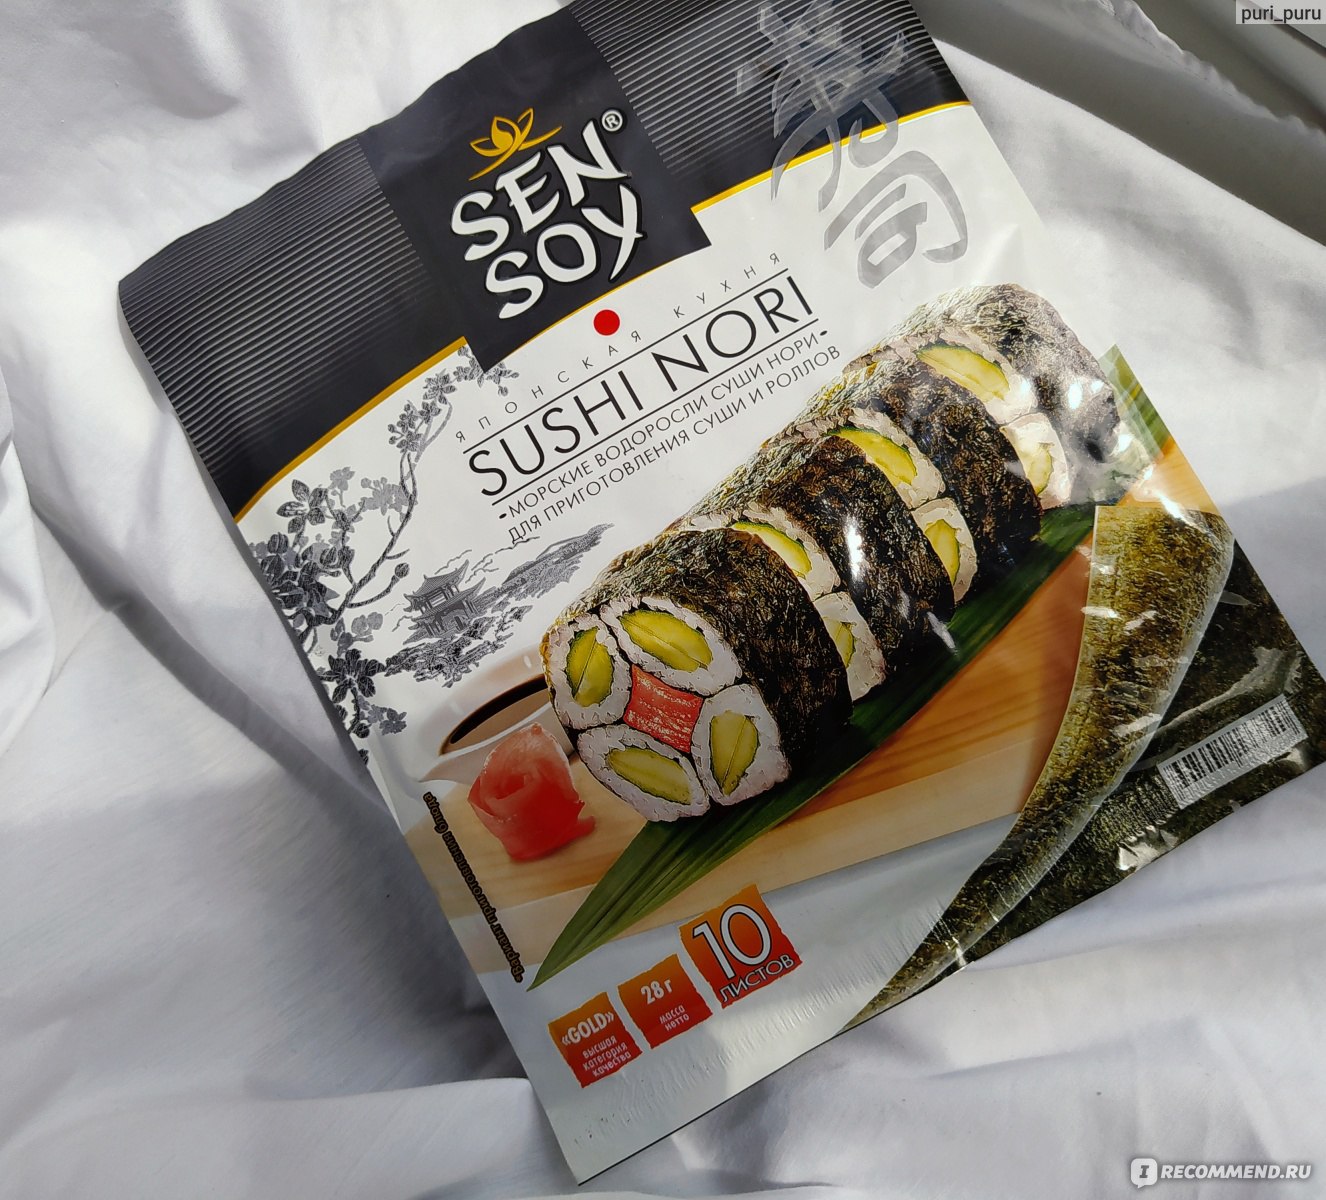 Какие начинки можно использовать для суши и роллов?